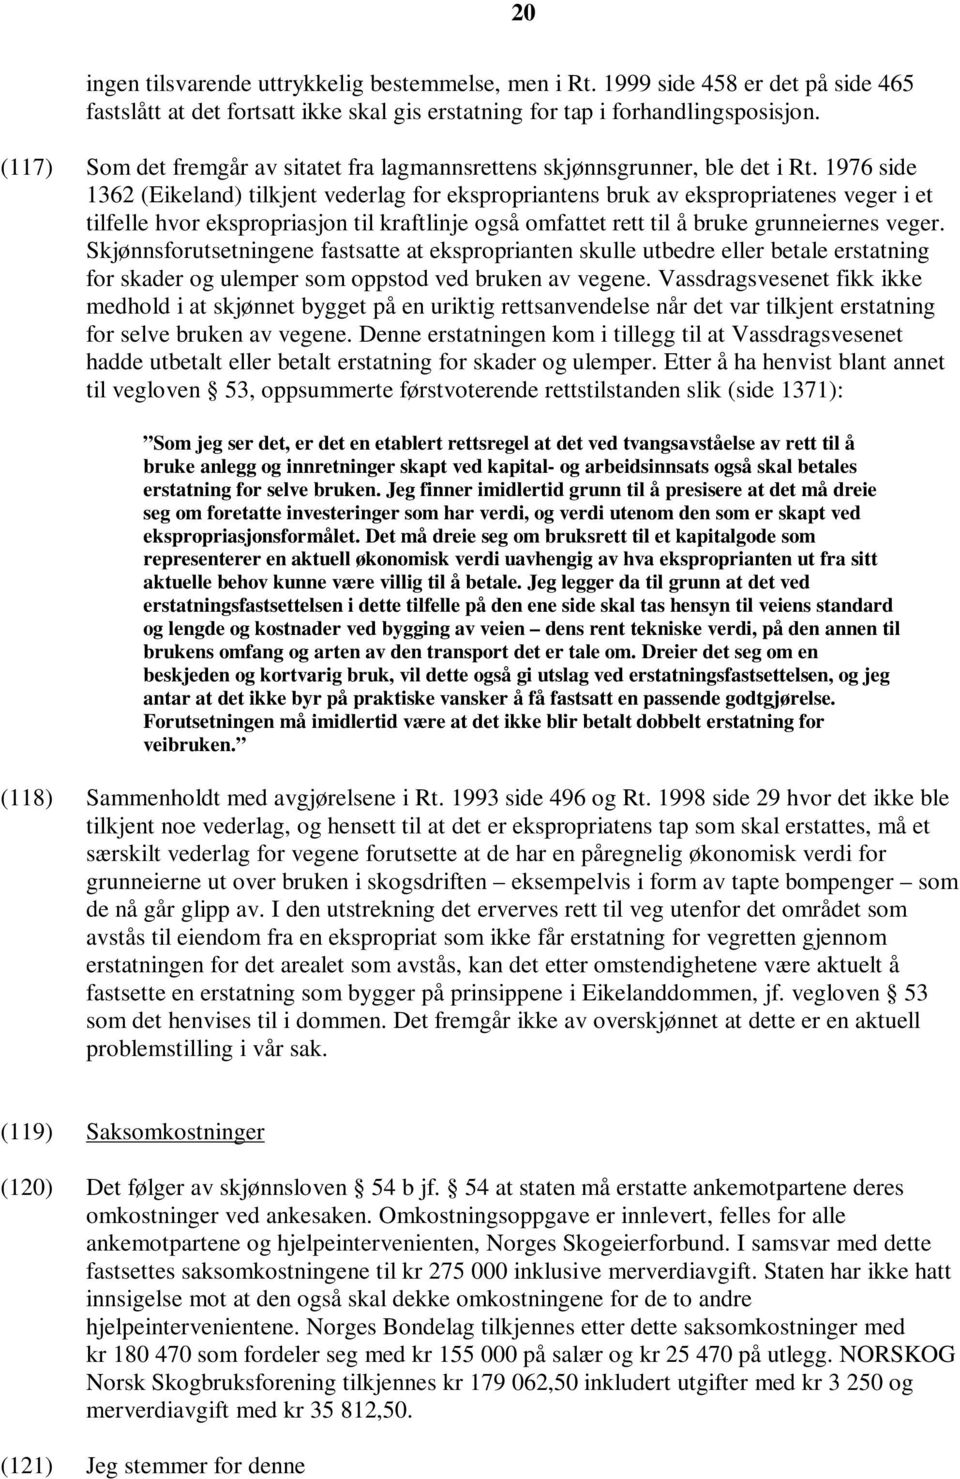 1976 side 1362 (Eikeland) tilkjent vederlag for ekspropriantens bruk av ekspropriatenes veger i et tilfelle hvor ekspropriasjon til kraftlinje også omfattet rett til å bruke grunneiernes veger.